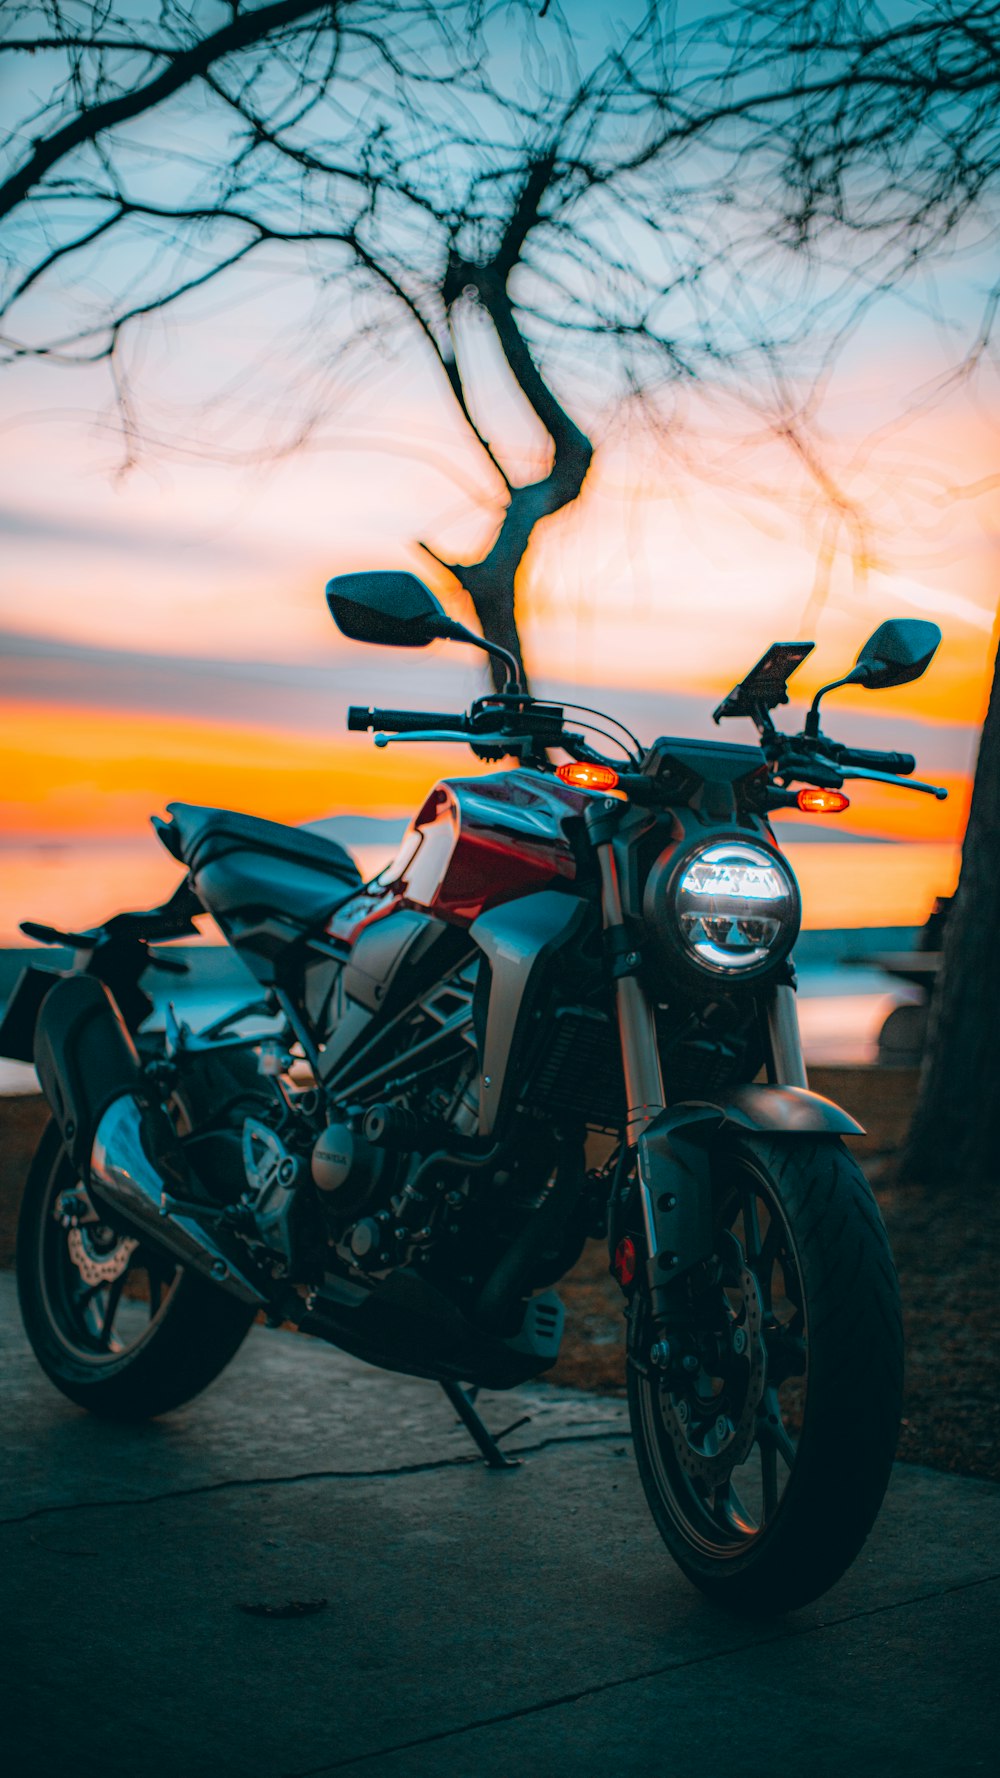 motocicleta preta e cinza durante o pôr do sol